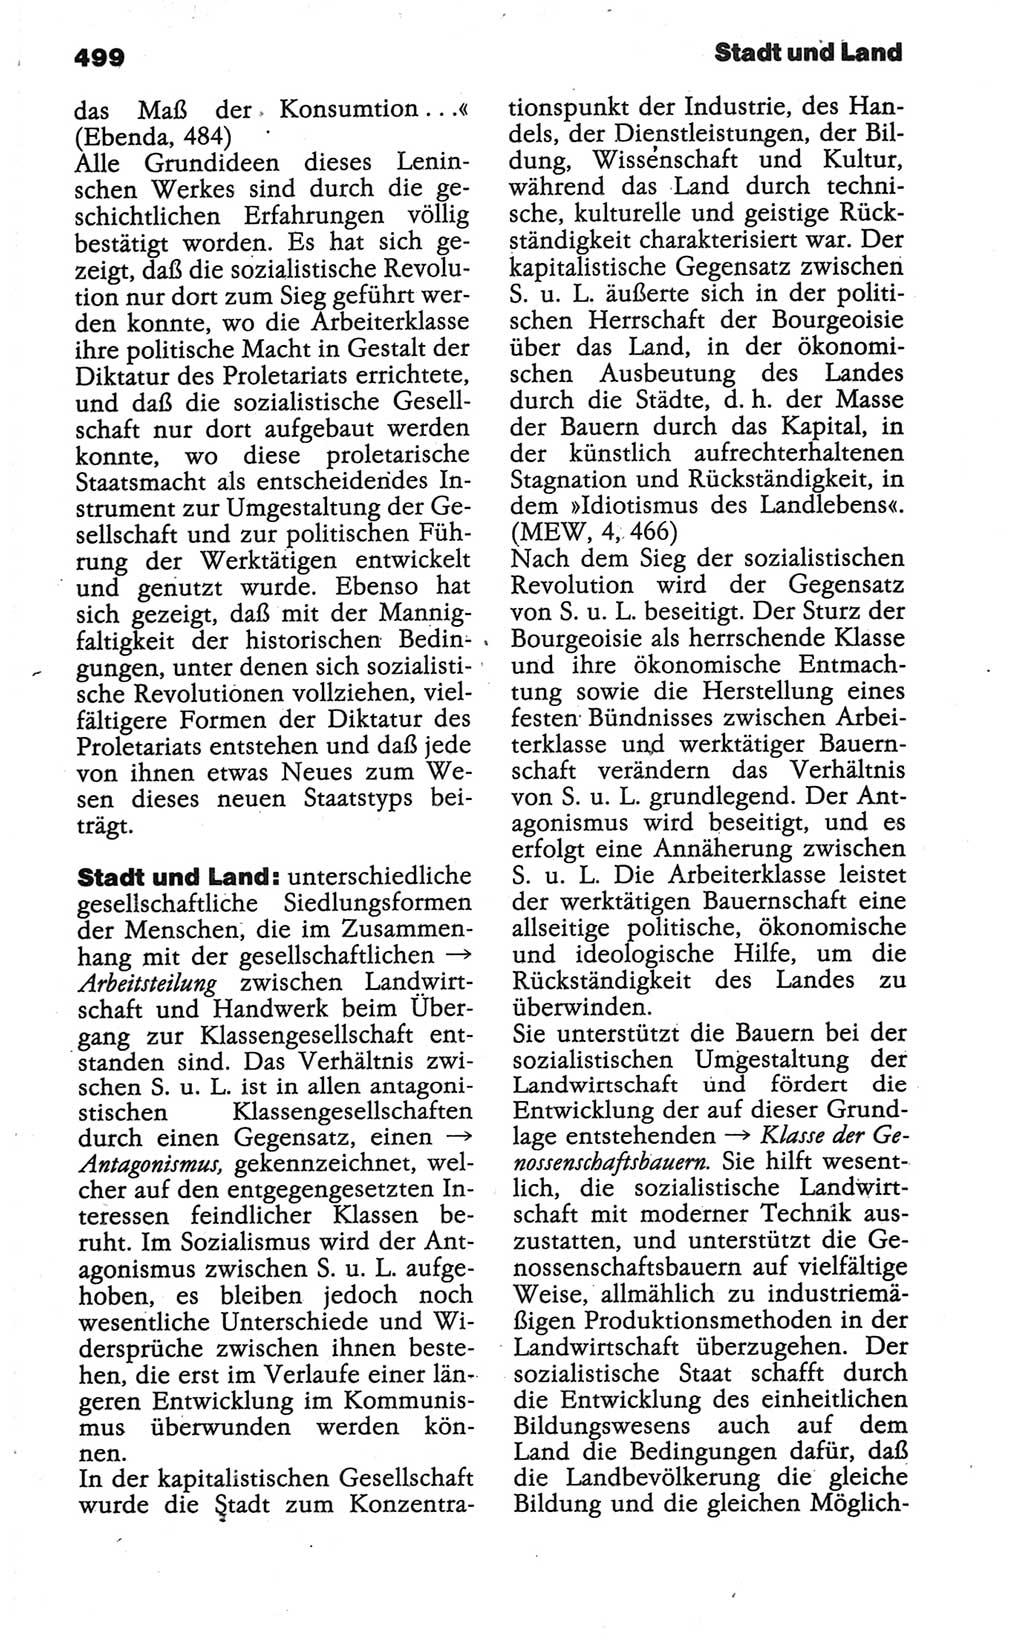 Wörterbuch der marxistisch-leninistischen Philosophie [Deutsche Demokratische Republik (DDR)] 1986, Seite 499 (Wb. ML Phil. DDR 1986, S. 499)